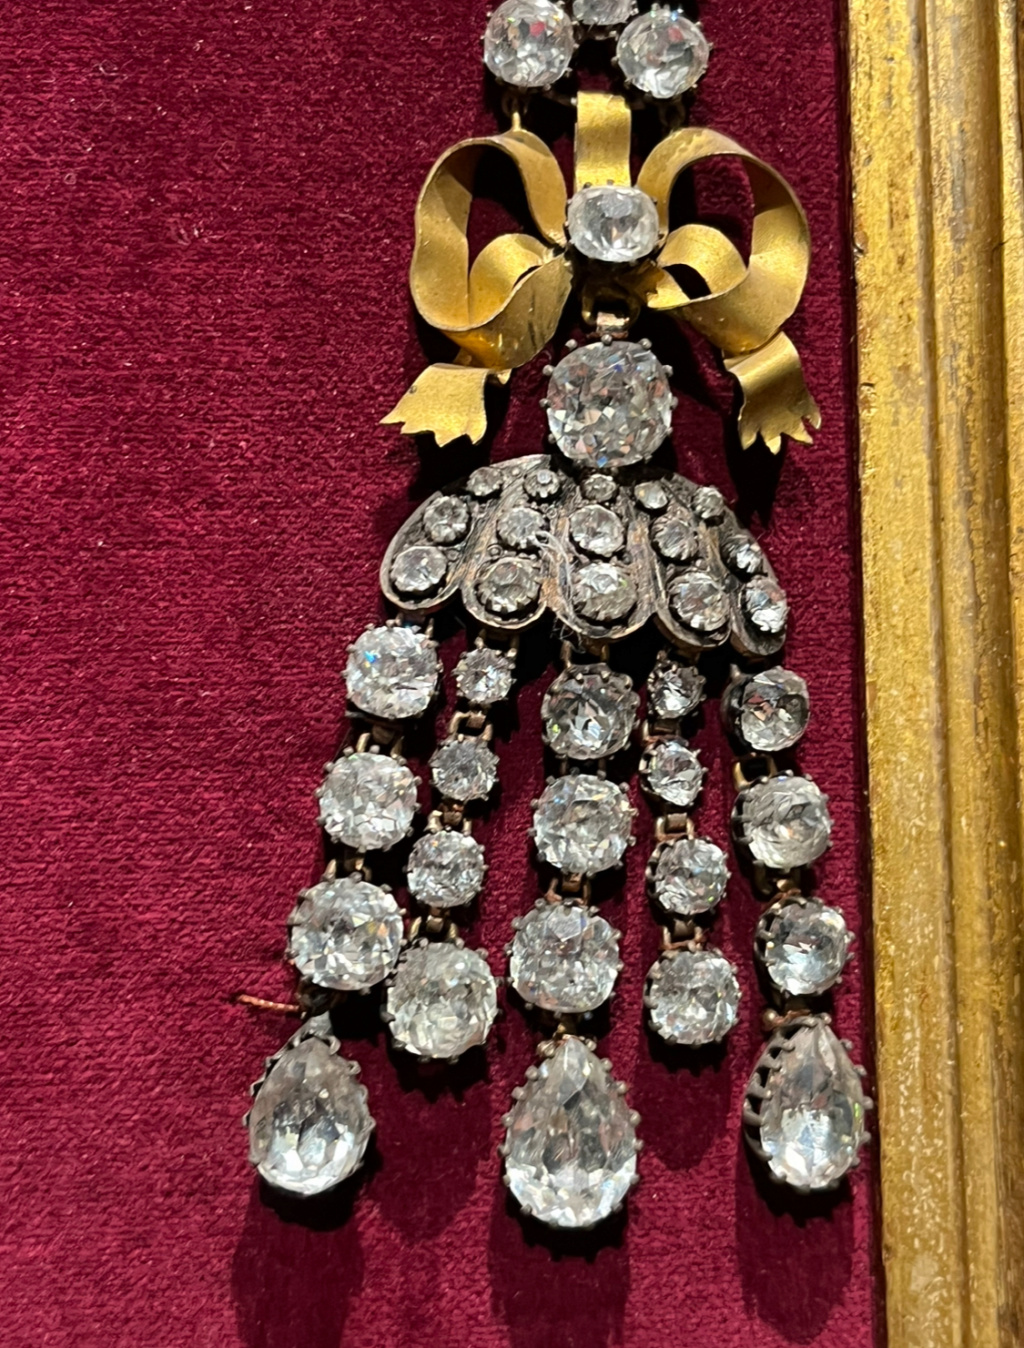 collier - Le collier dit de la reine Marie-Antoinette (L'affaire du collier de la reine), et ses répliques - Page 2 Img_5414